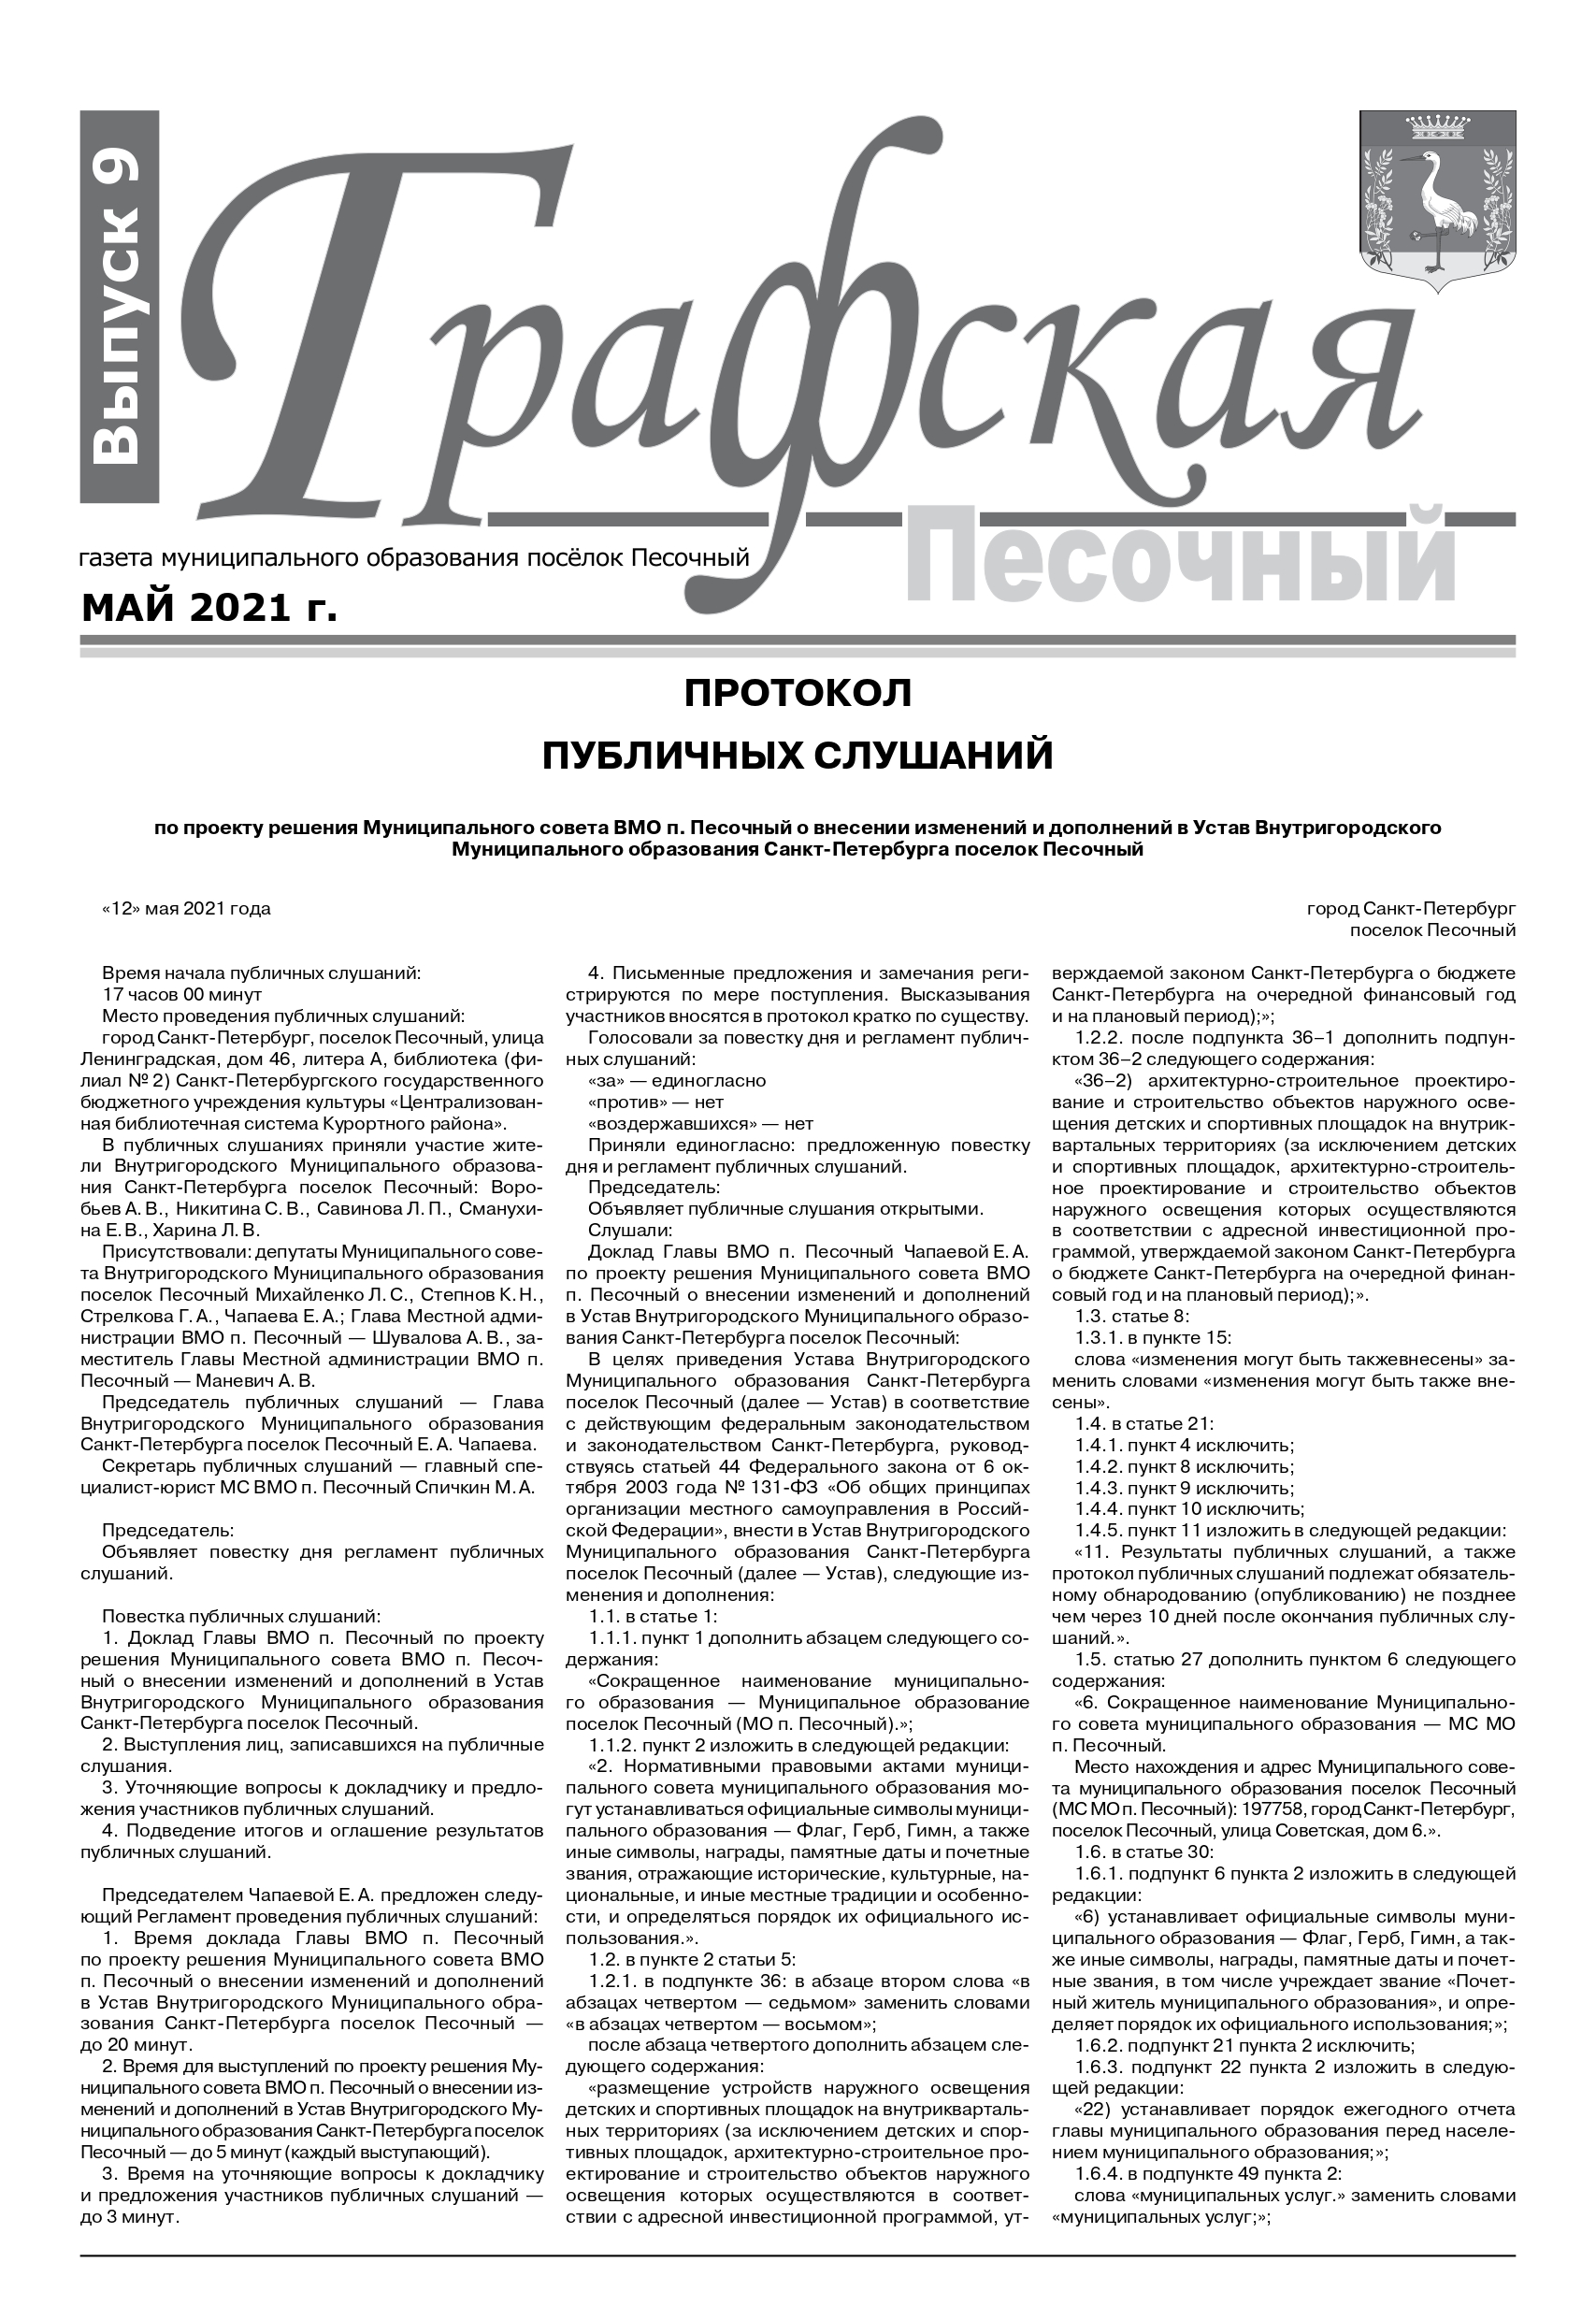 Газета "Графская" выпуск № 9, апрель 2021